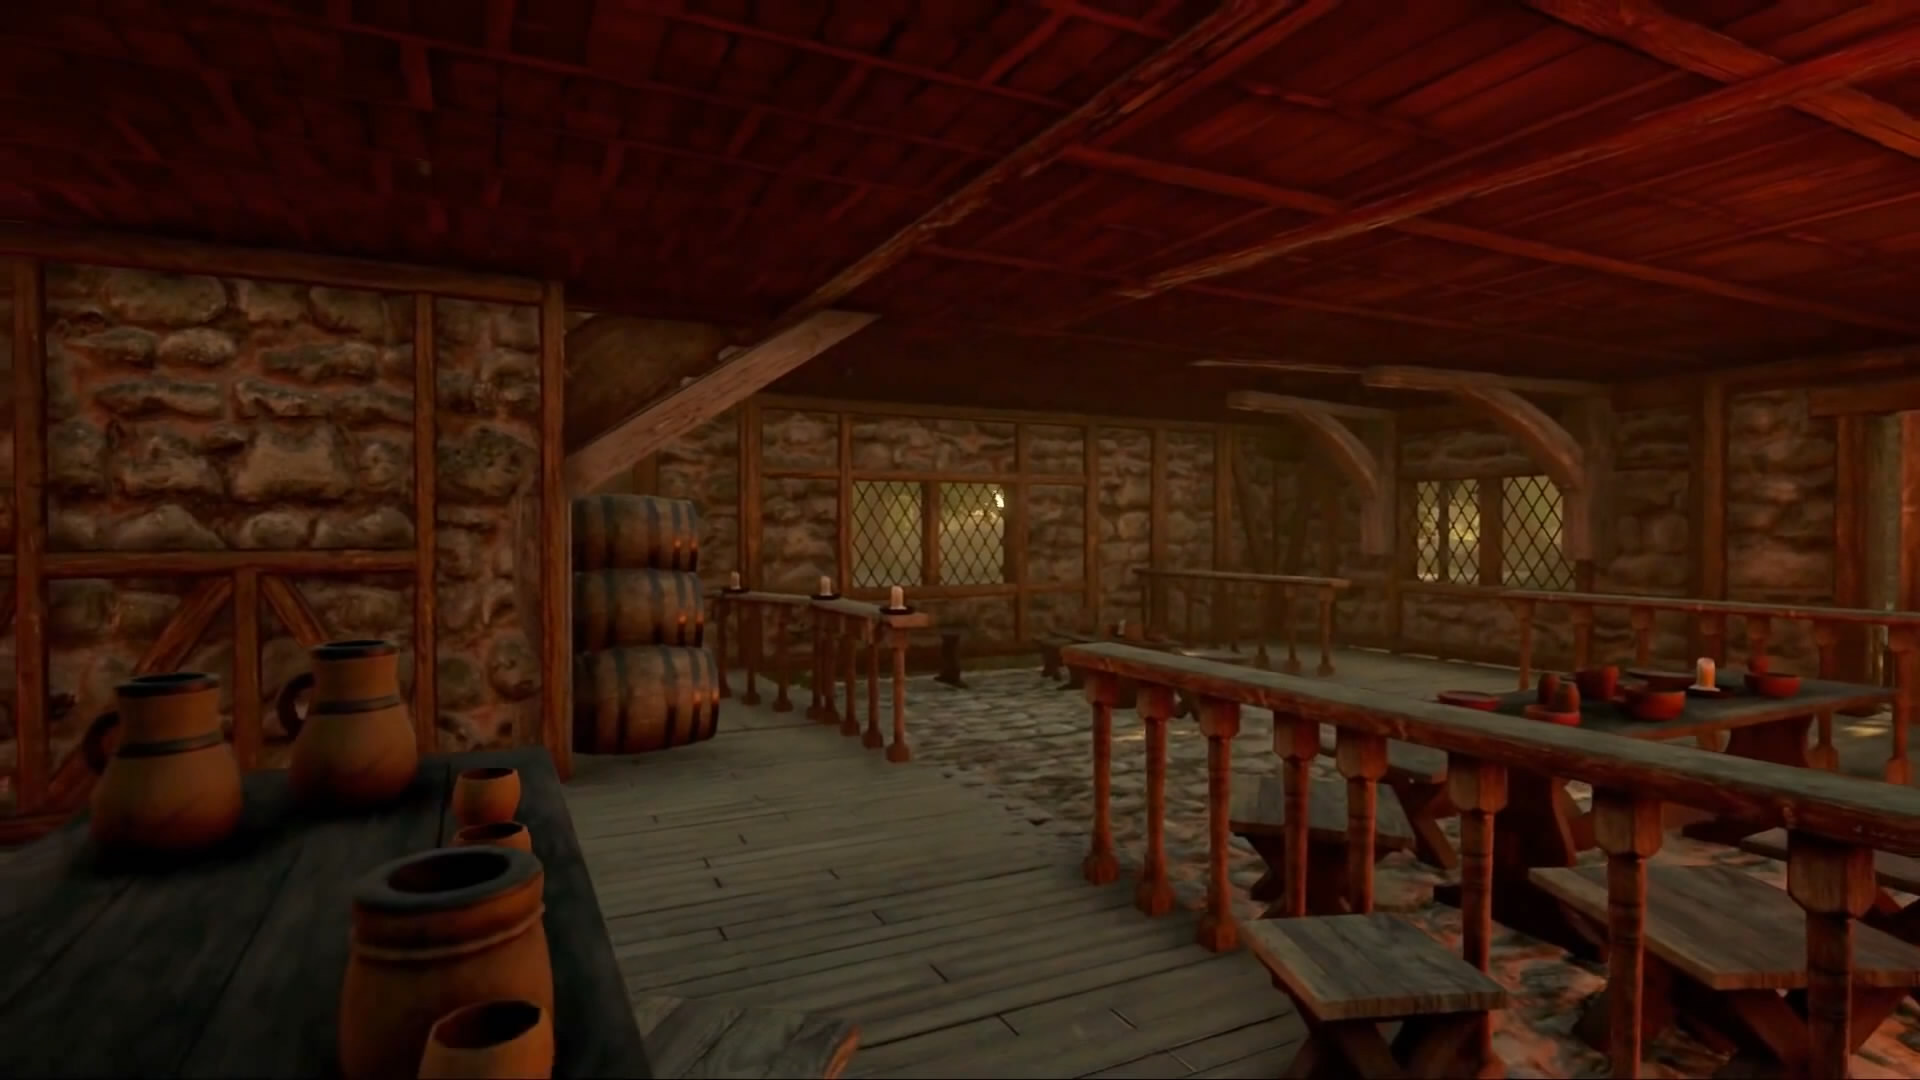 玩家用虚幻4重制《魔兽世界》场景 风景美丽效果出色